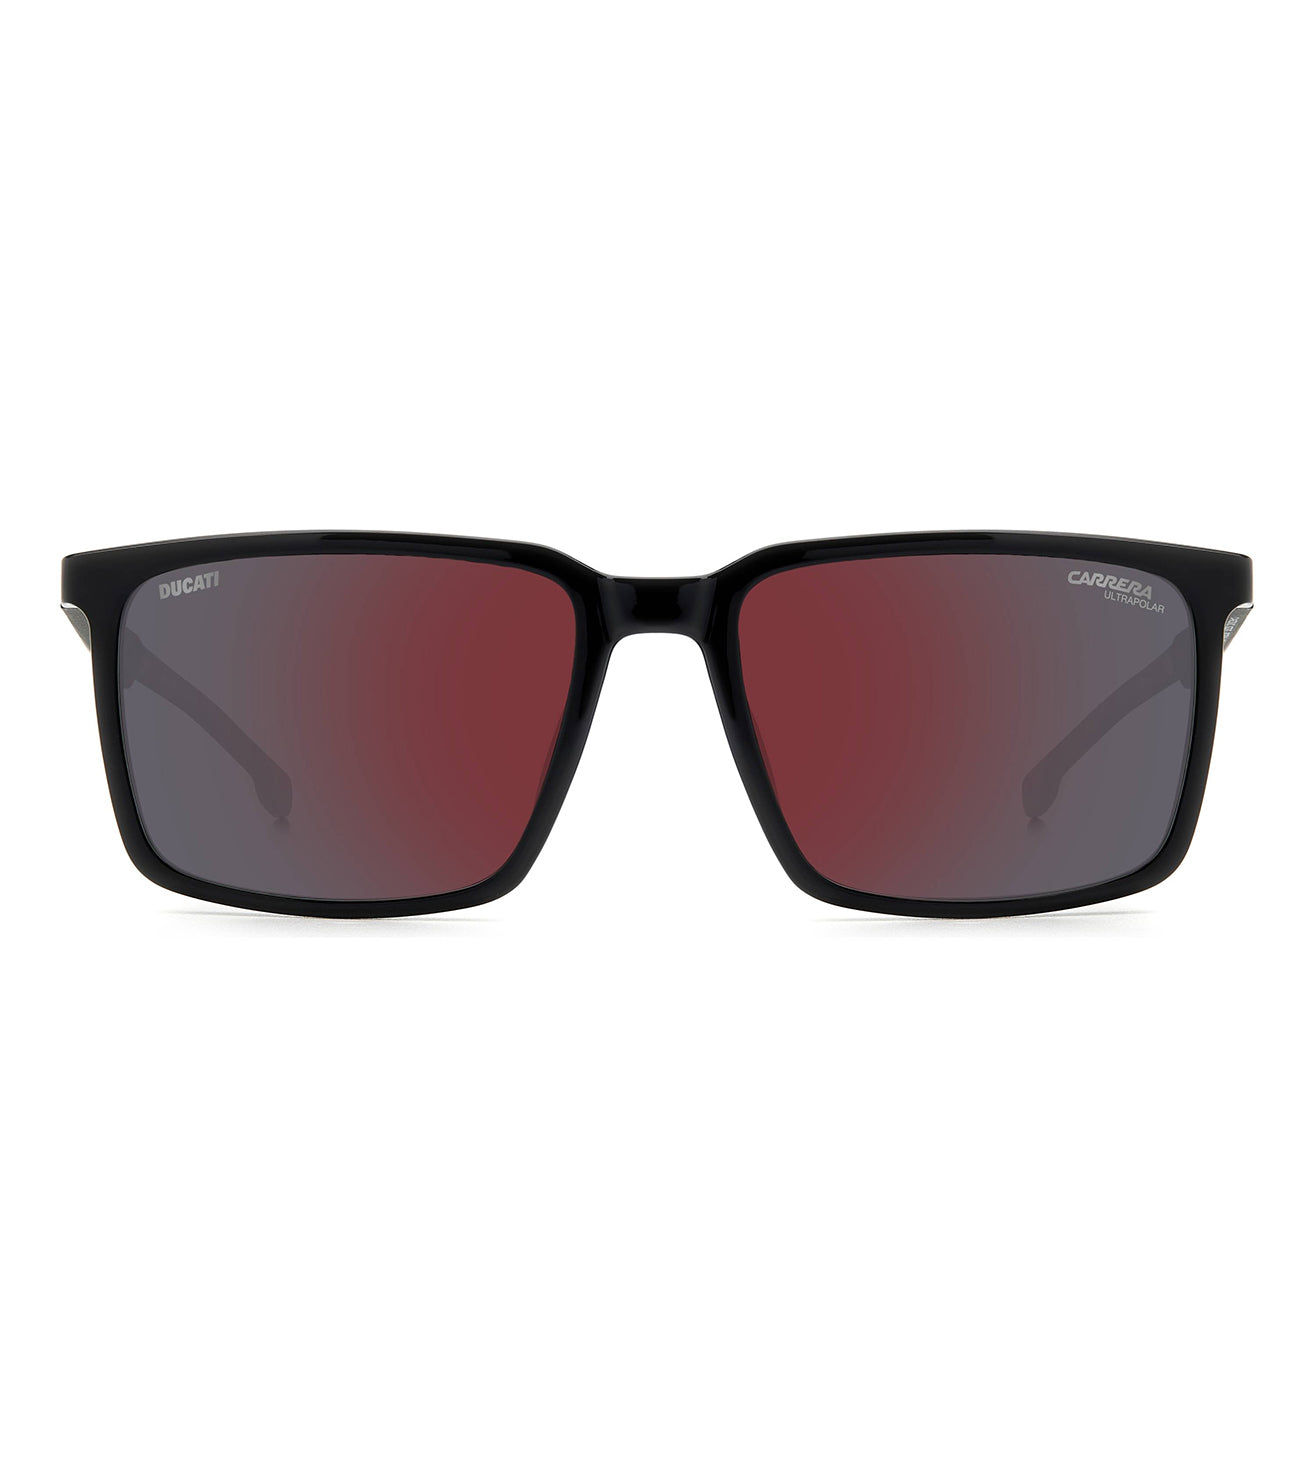 Carrera Men's Red Square Sunglasses